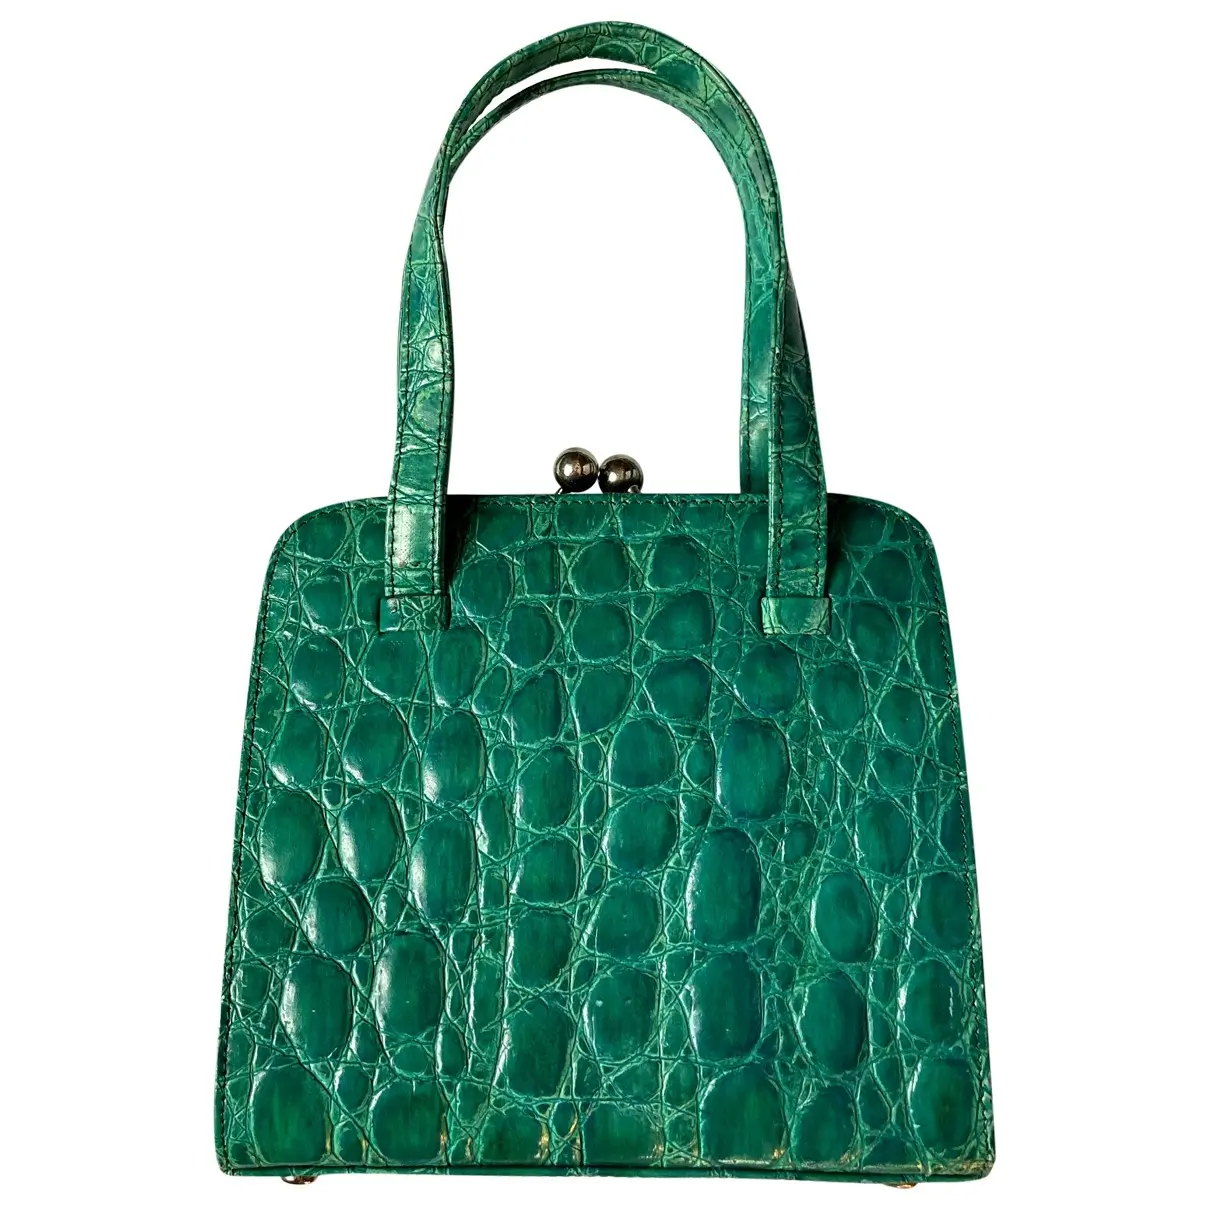 Crocodile handbag Luciano Padovan - Vintage